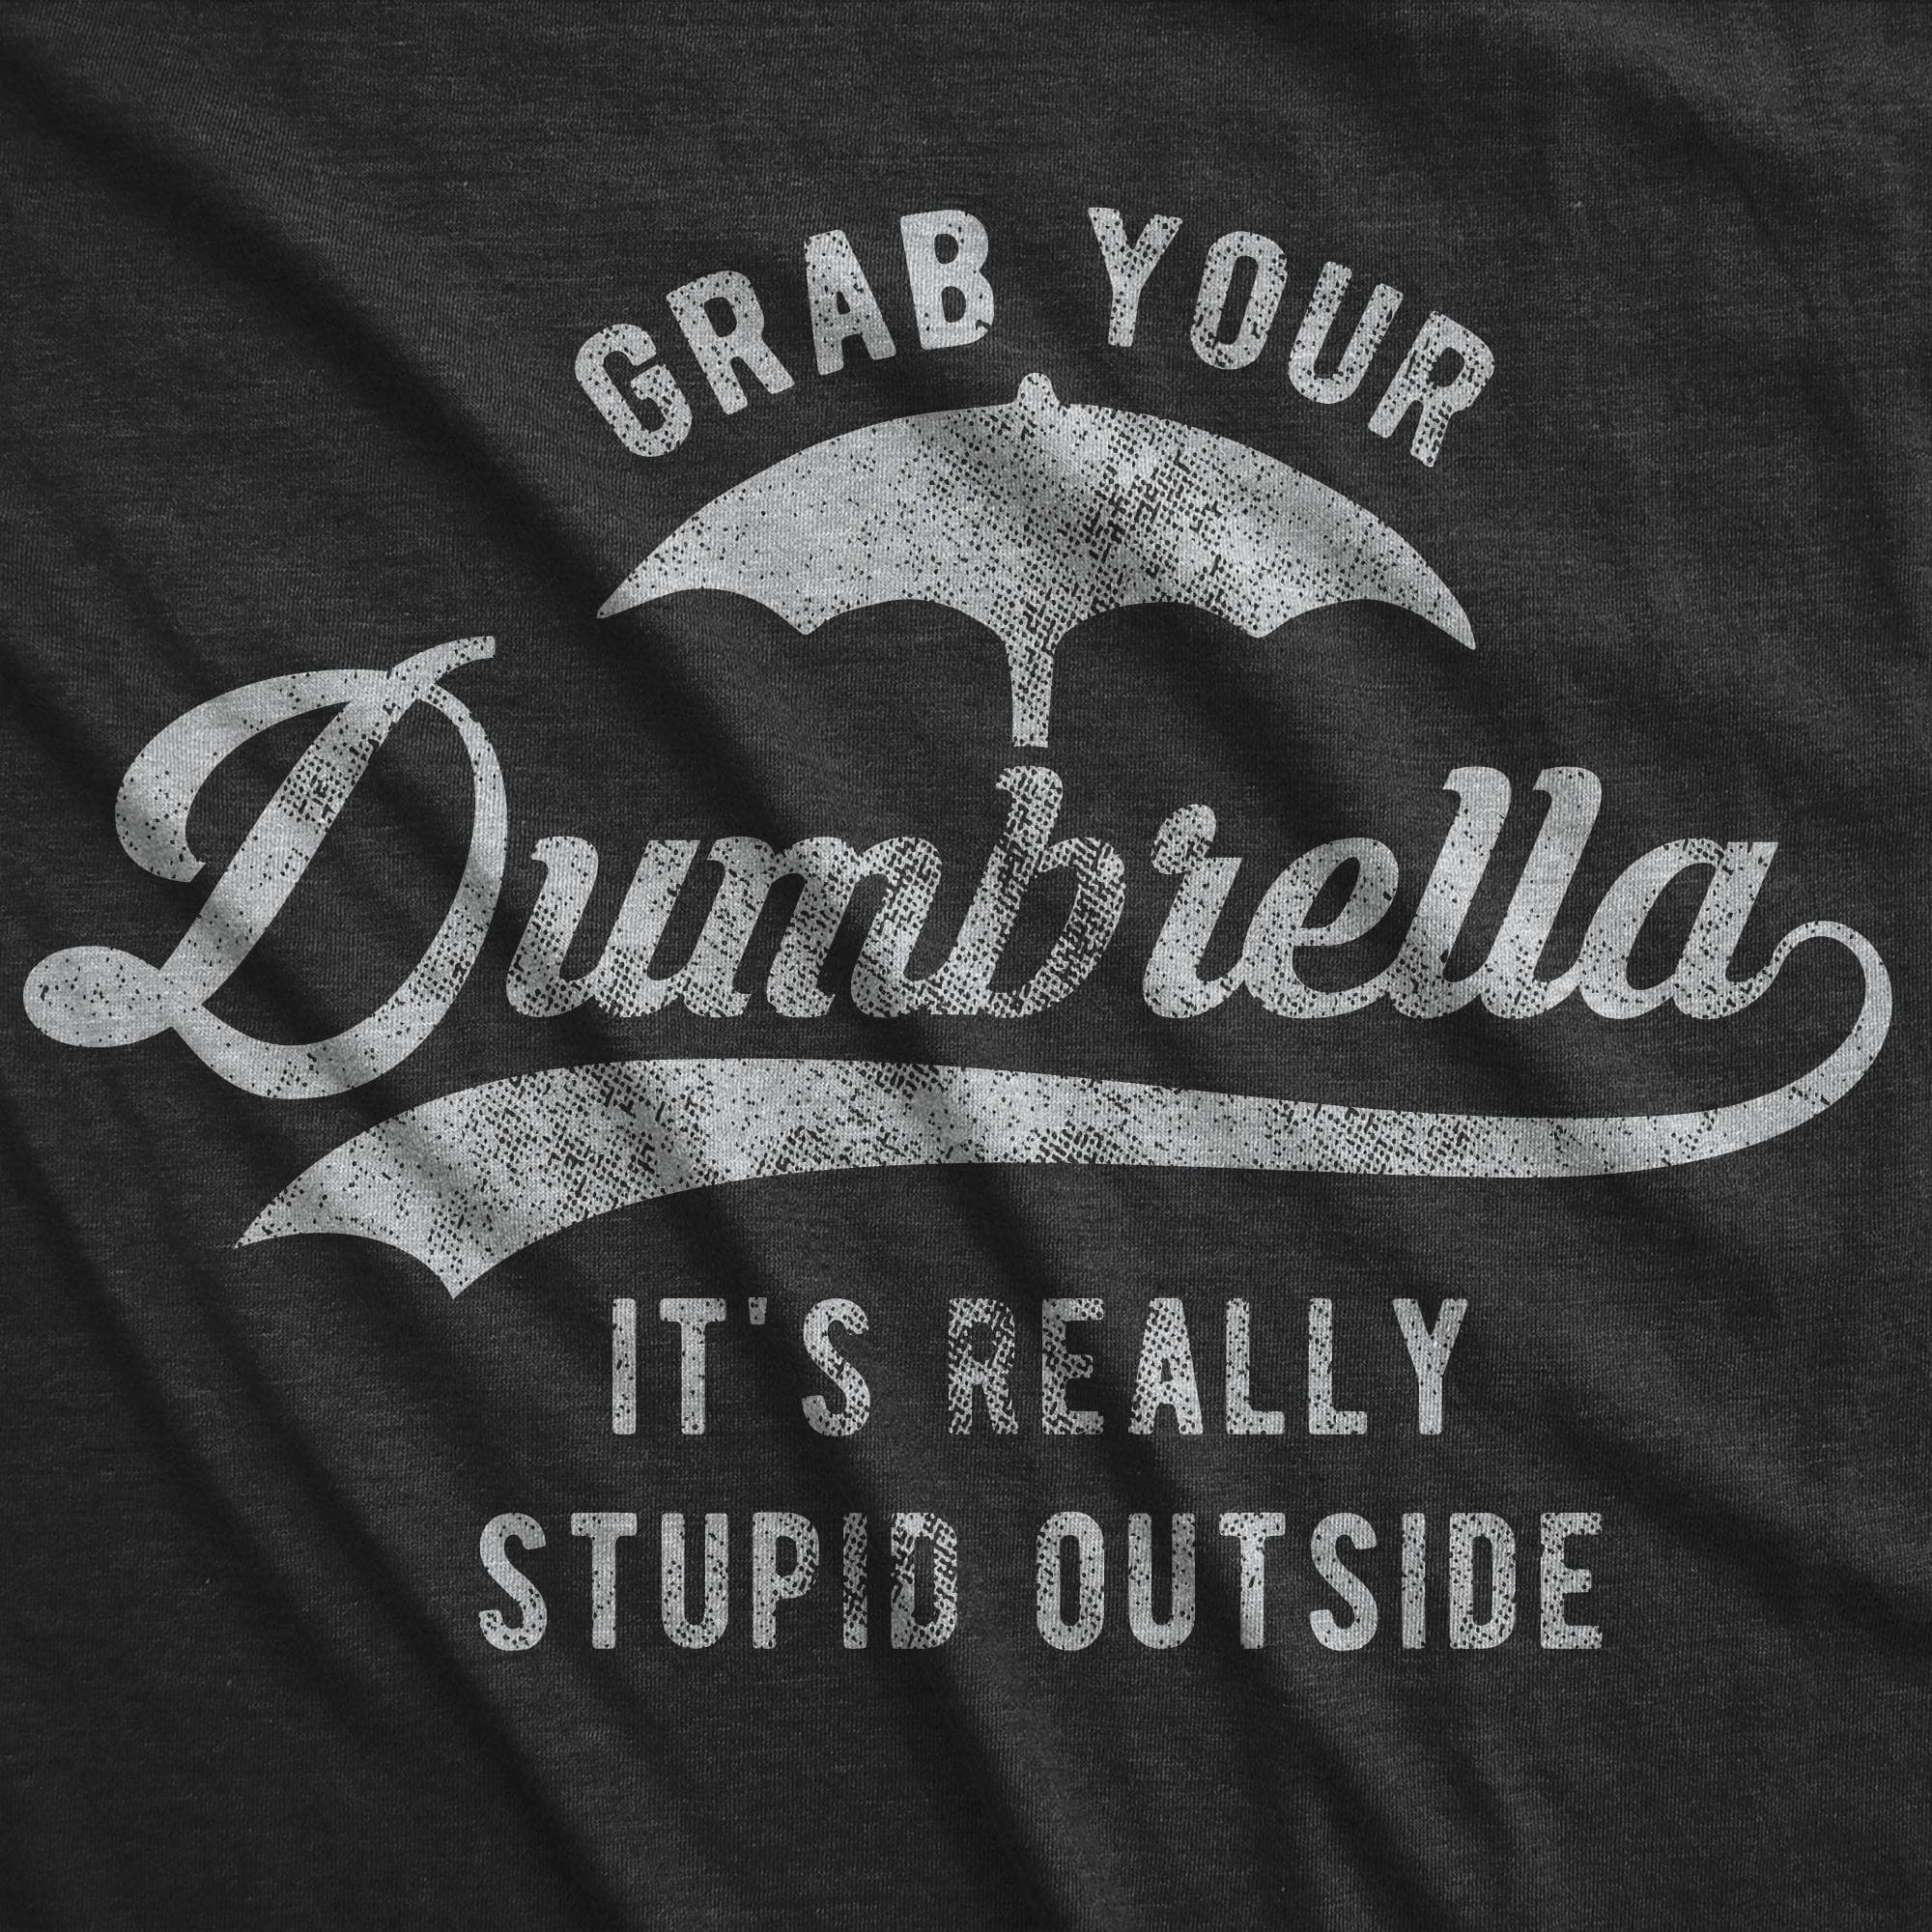 Grab Your Dumbrella Men's Tshirt - Crazy Dog T-Shirts